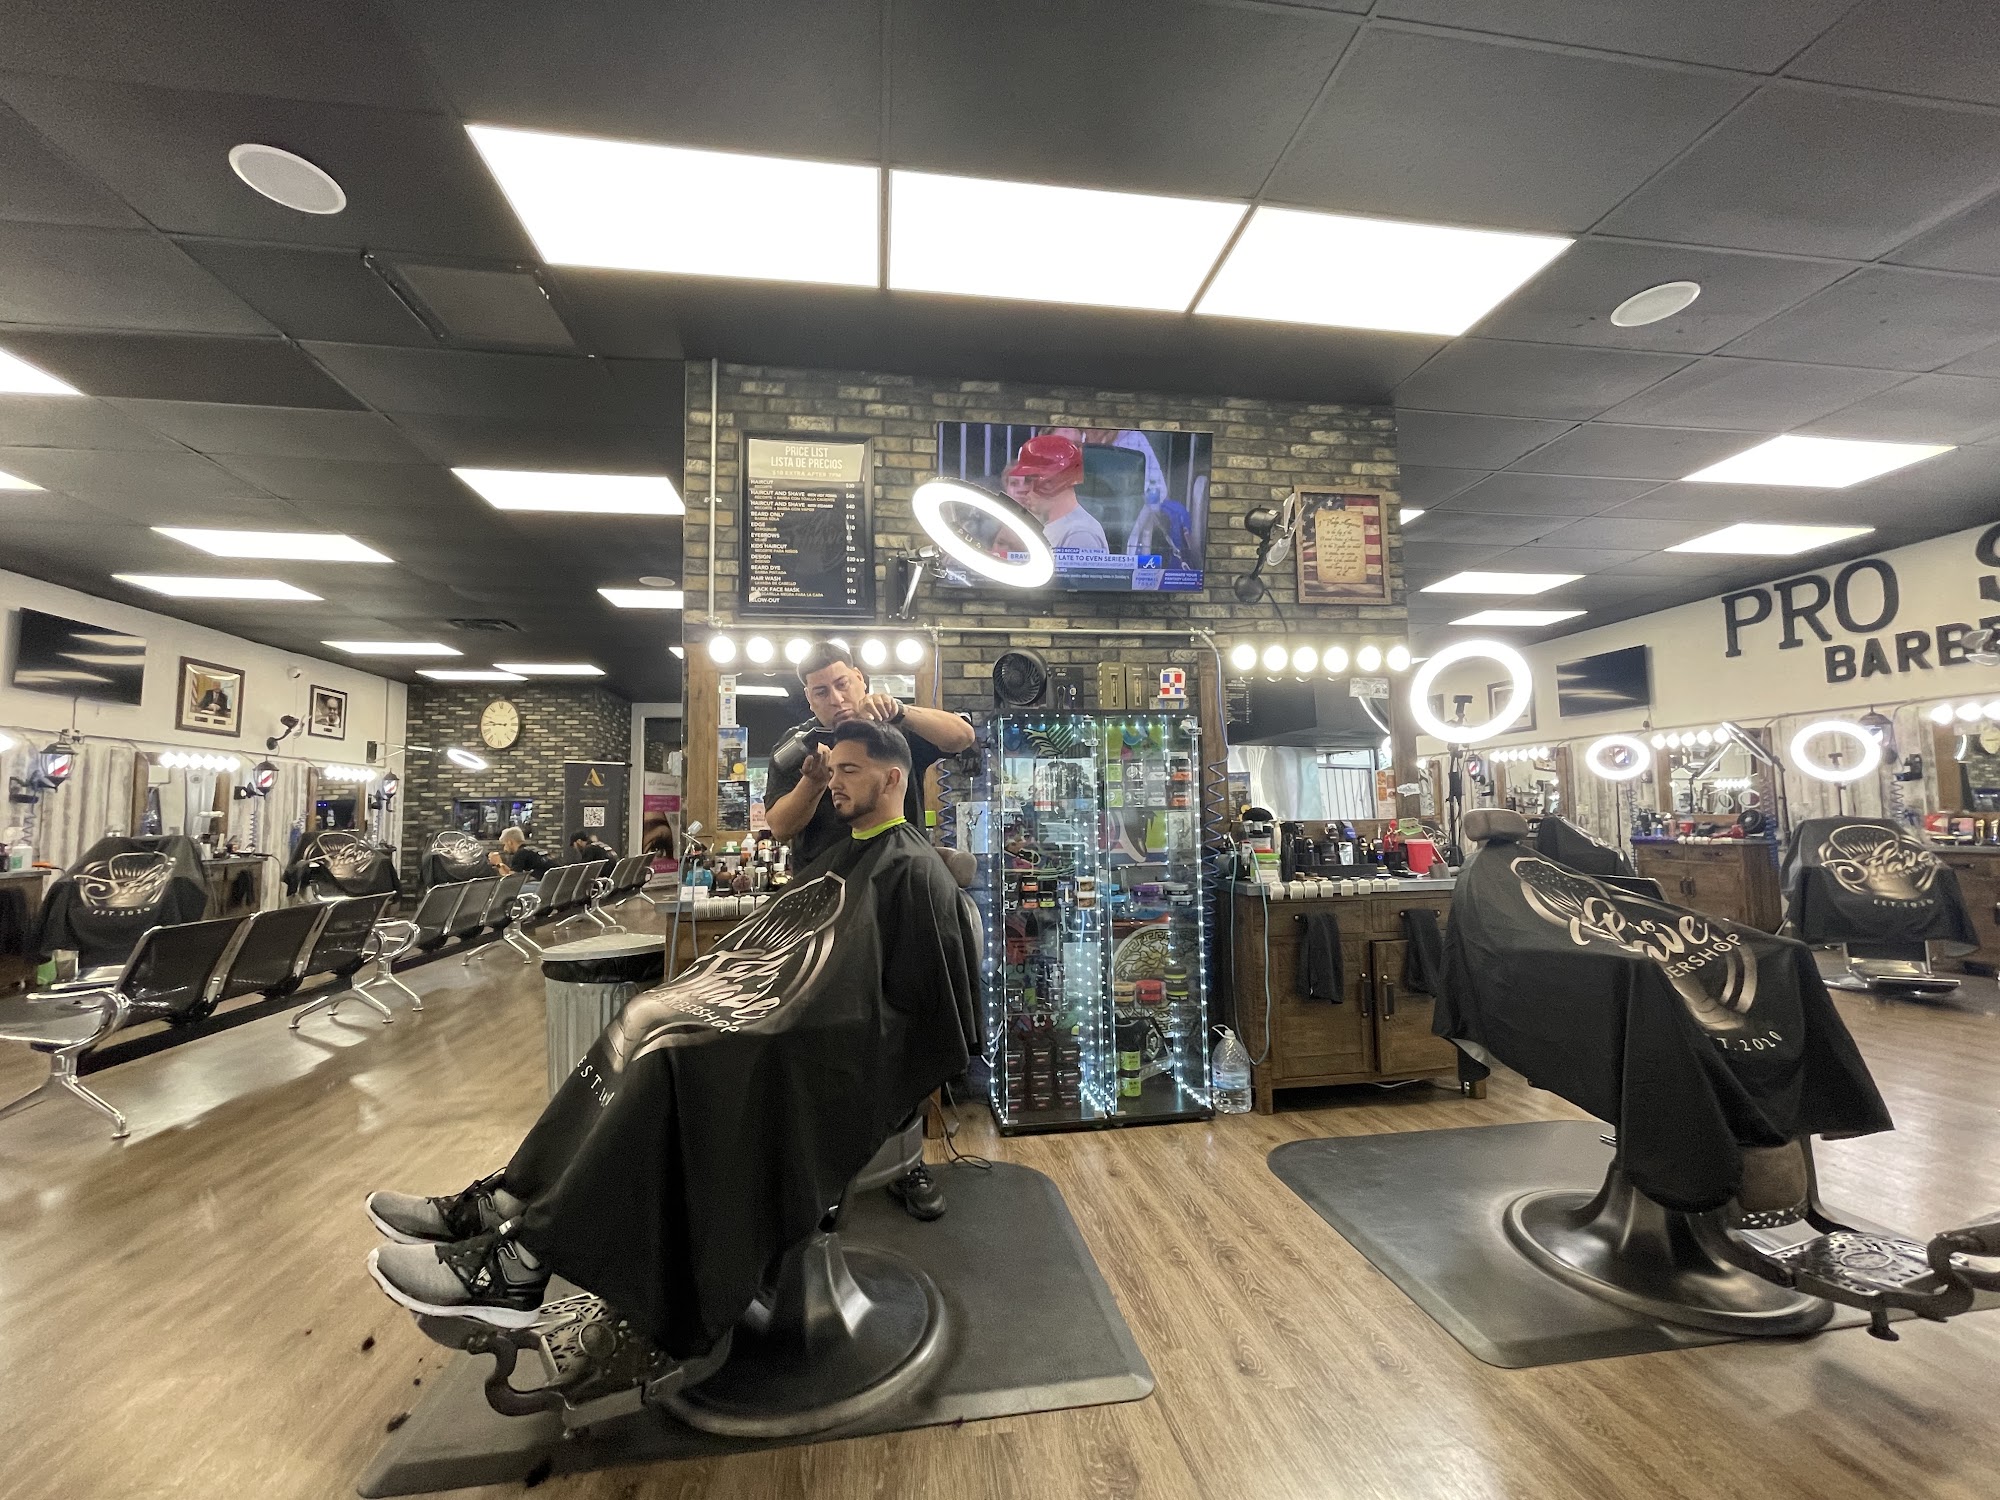 Pro shave barbershop LLC